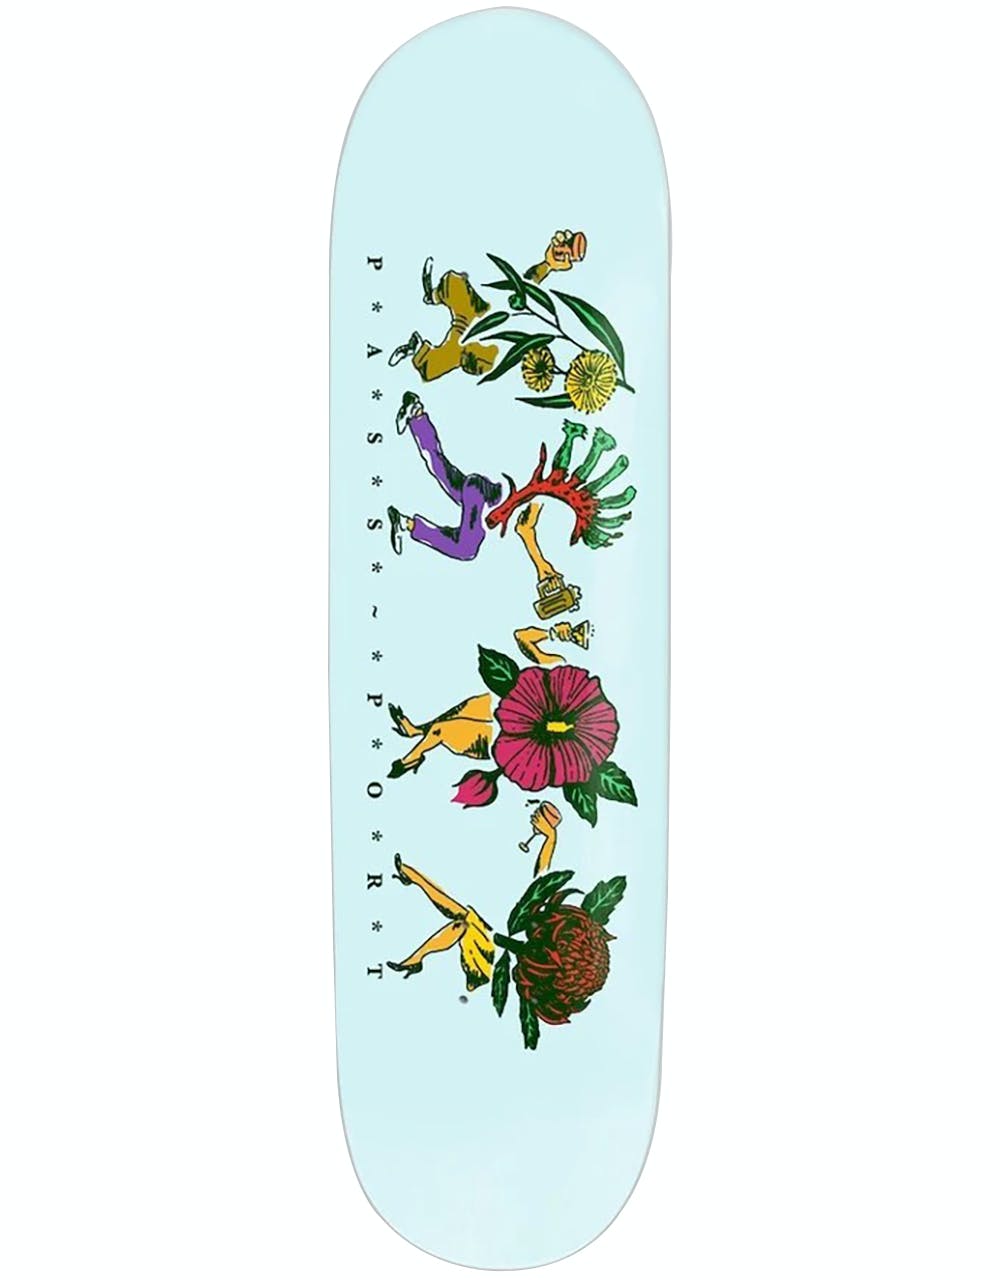 Pass Port Sky 'Floral Friends Series' Skateboard Deck - 8.38"